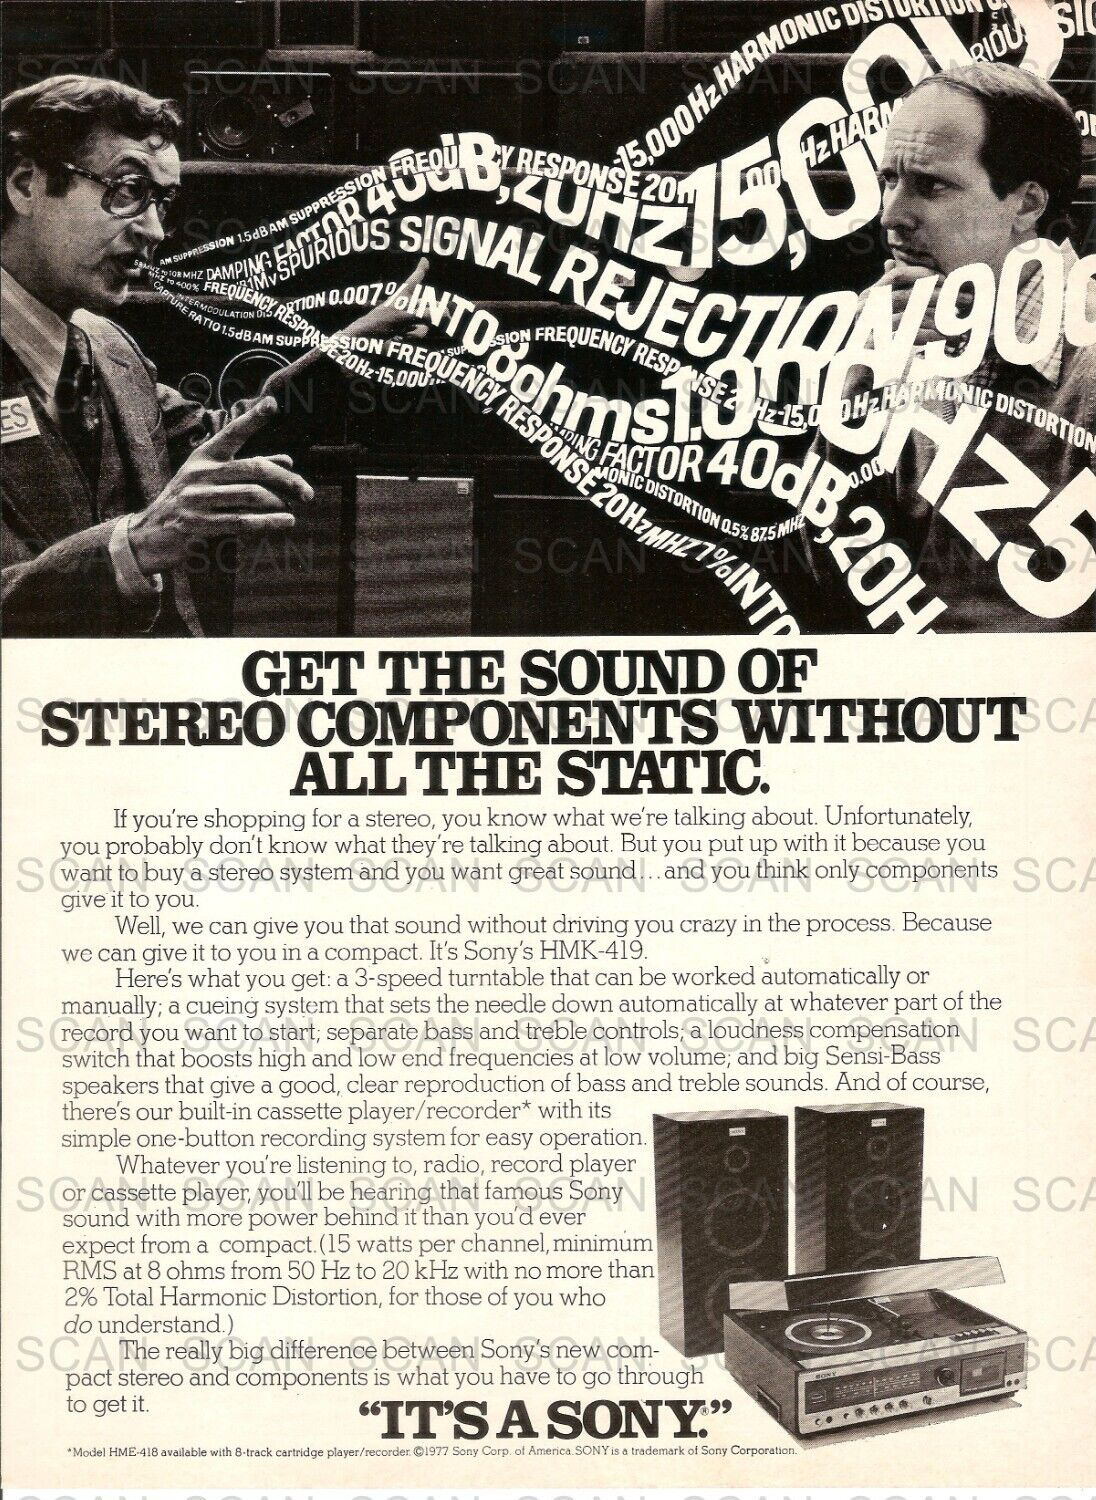 1978 Sony HMK-419 Stereo Vintage Magazine Ad   Sony Stereo